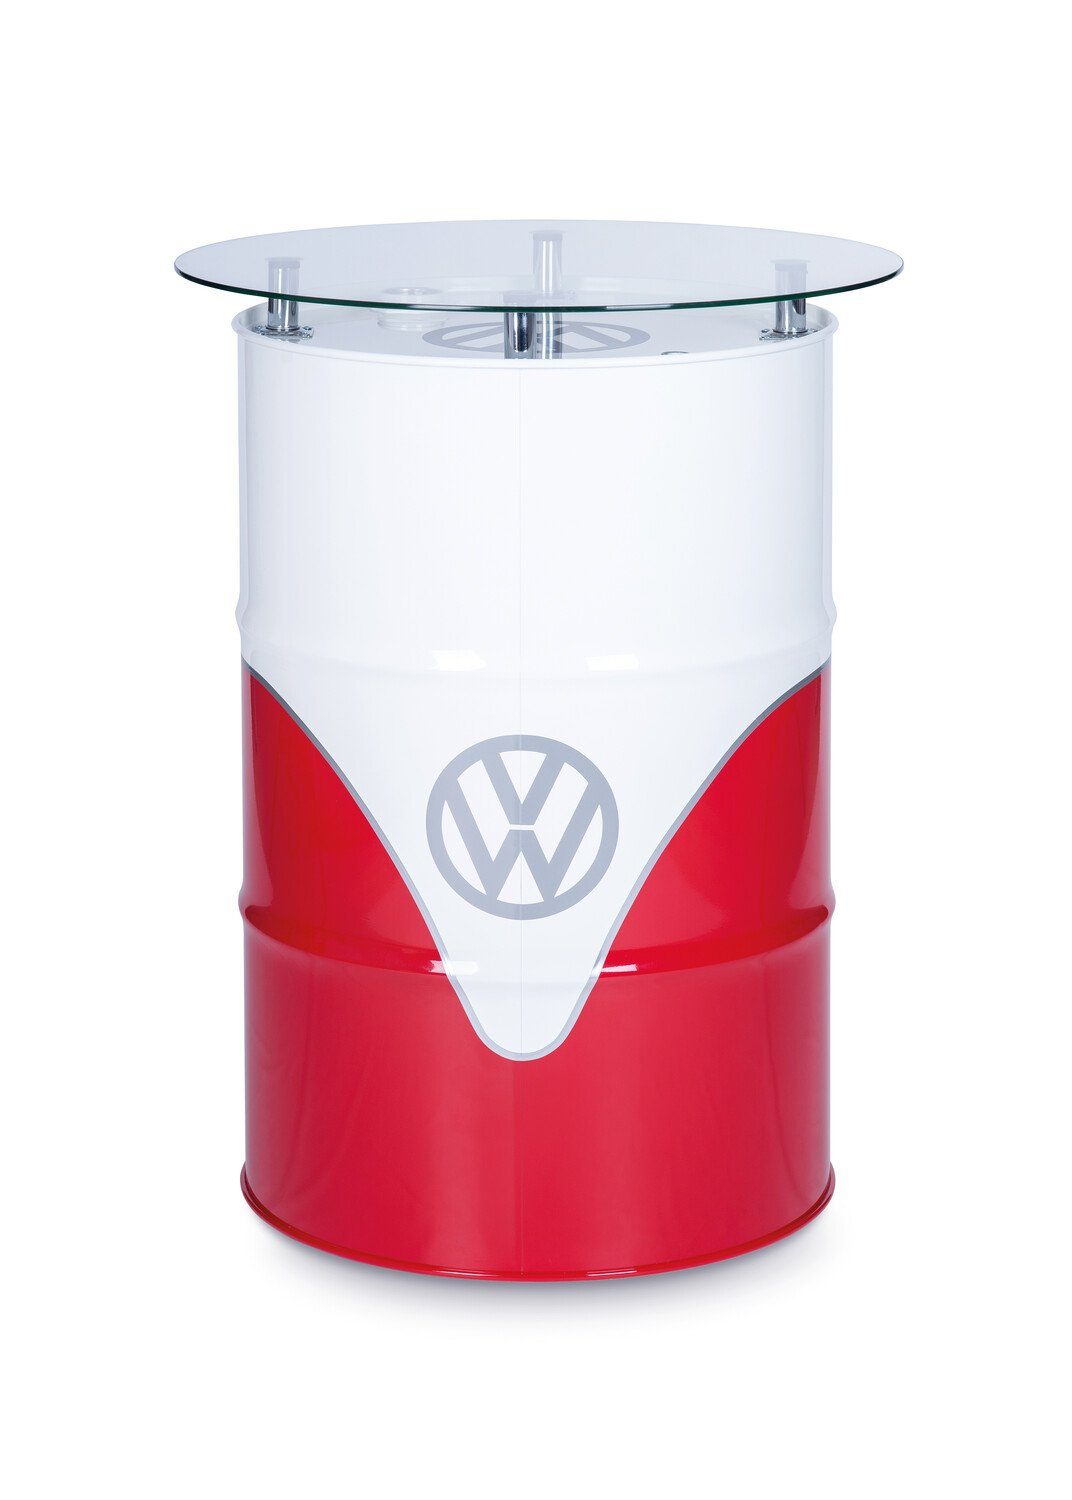 by pflegeleichtes Volkswagen & rot Collection Hochglanz/ Vintage VW Design, Dekofass in T1 Beistelltisch im BRISA Rot&Weiß Bulli Stehtisch weiß